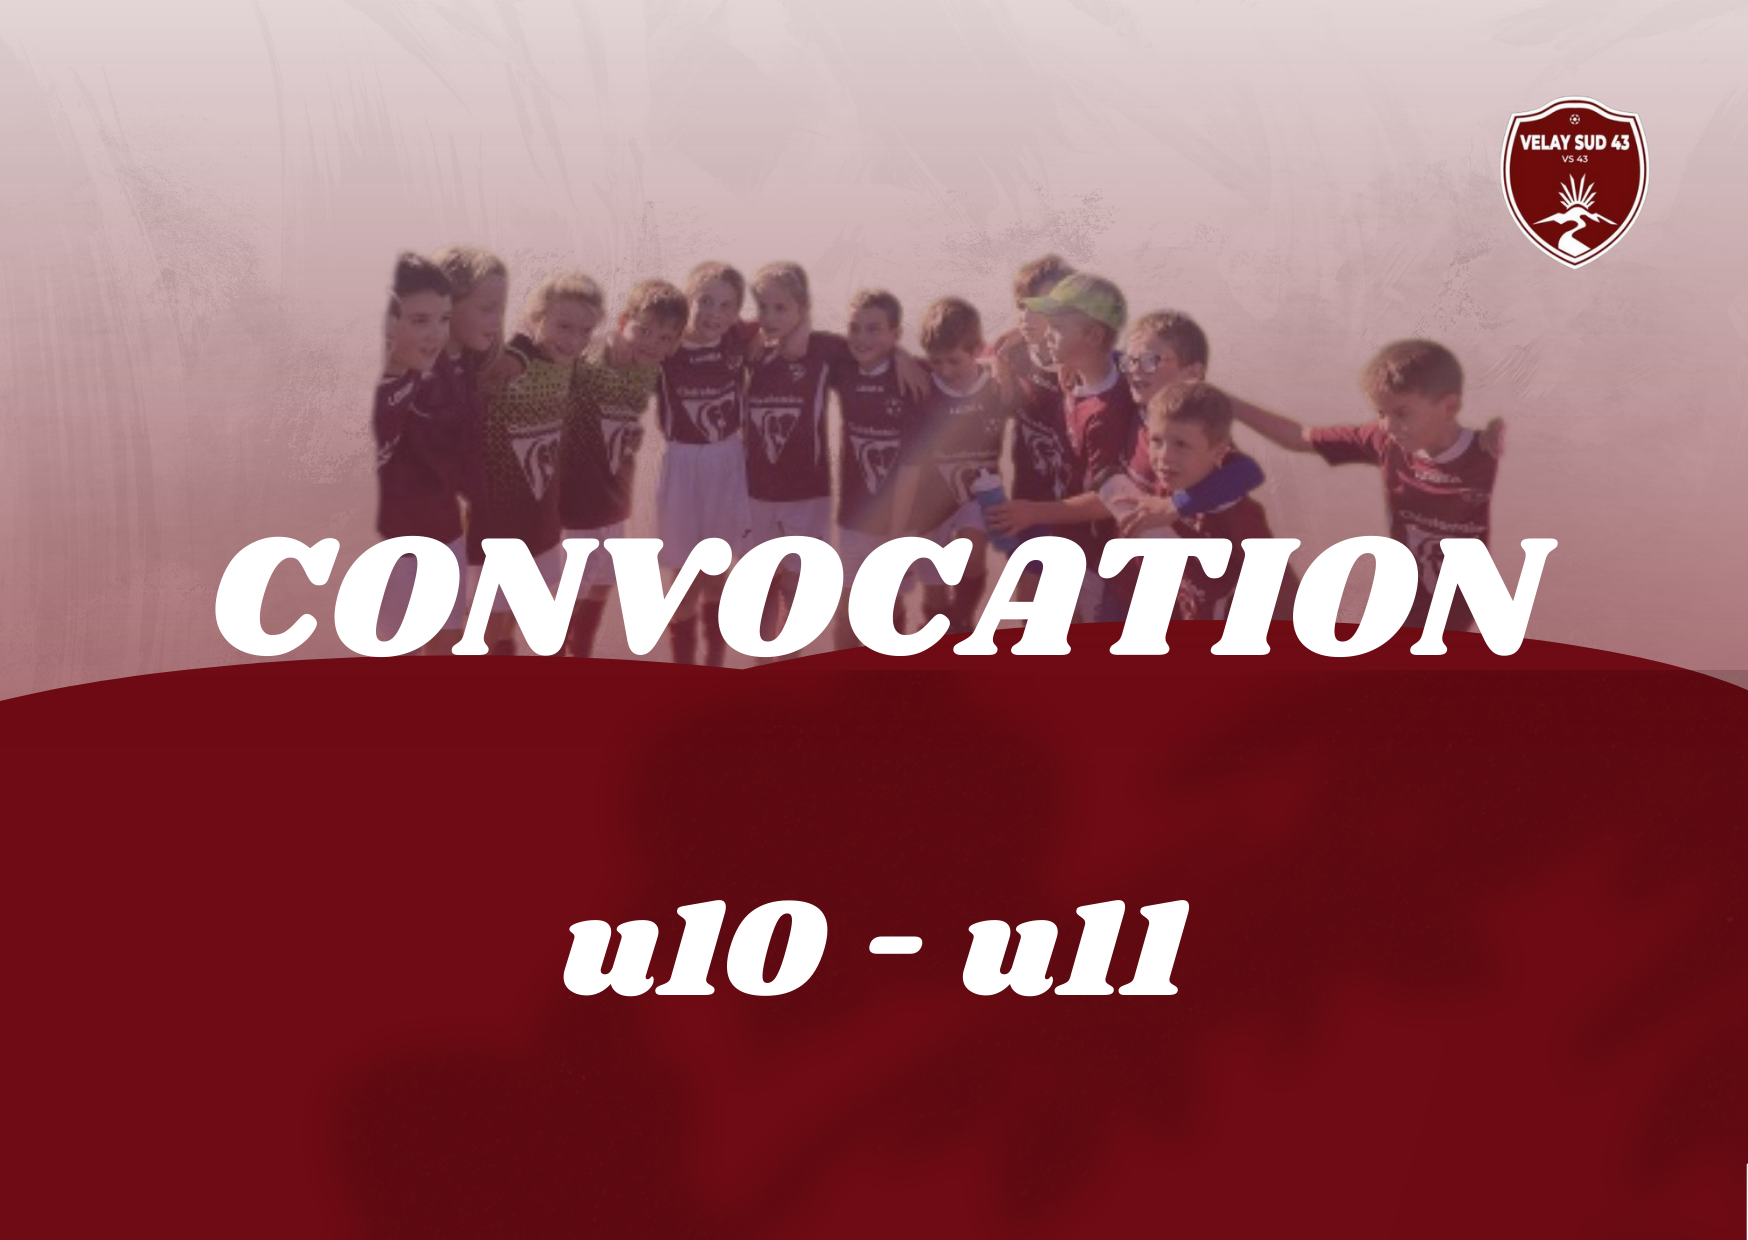 CONVOCATION U10 - U11